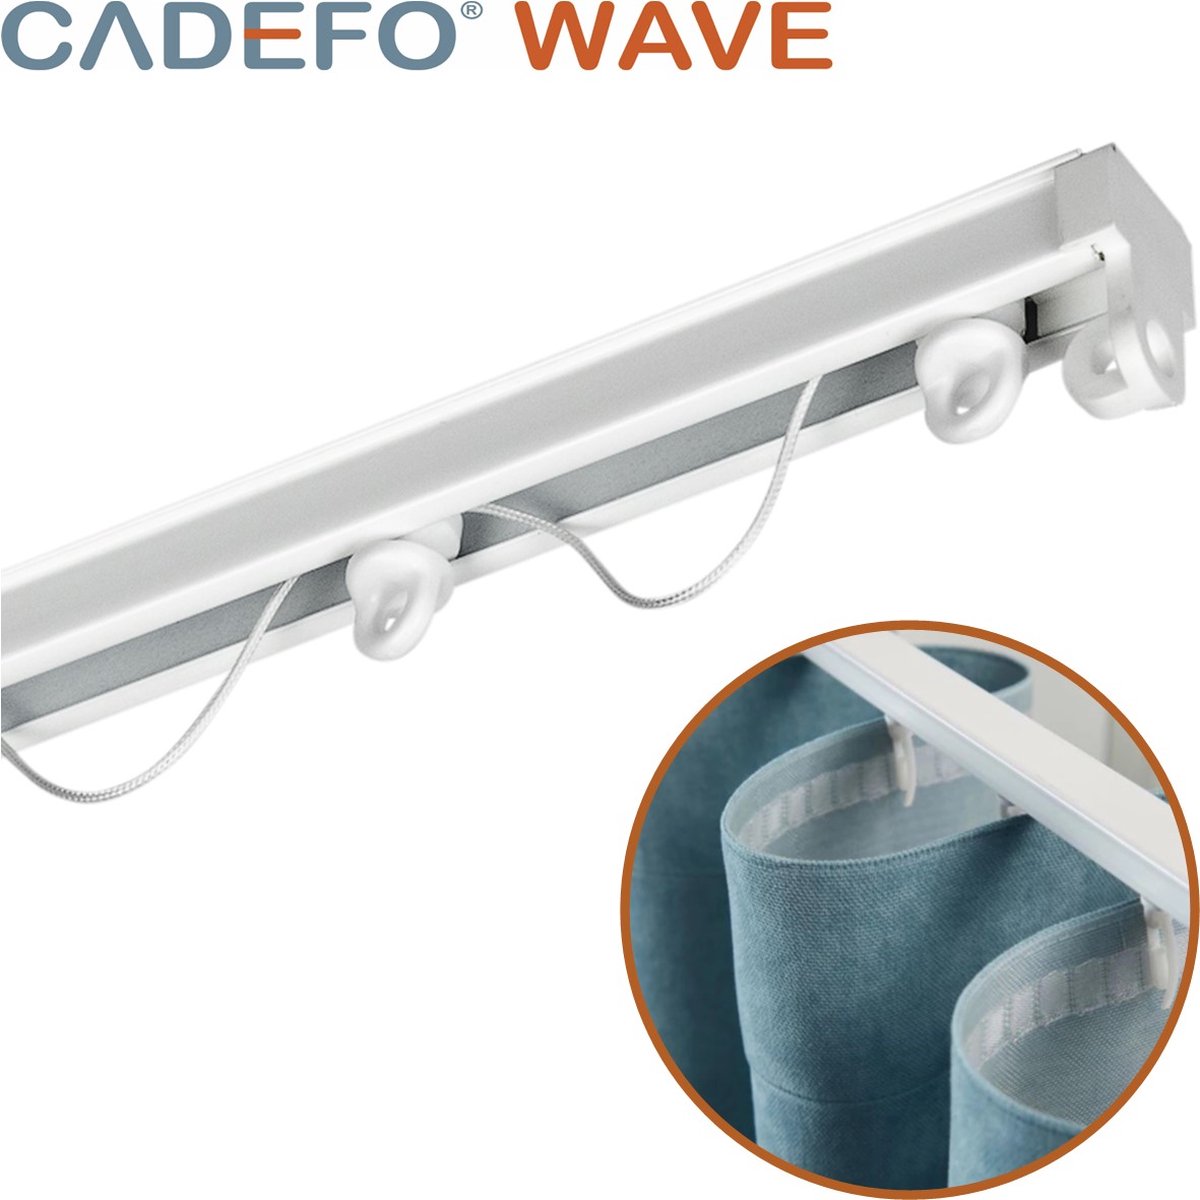 CADEFO WAVE (401 - 450 cm) Gordijnrails - Compleet op maat! - UIT 1 STUK - Leverbaar tot 6 meter - Plafondbevestiging - Lengte 403 cm